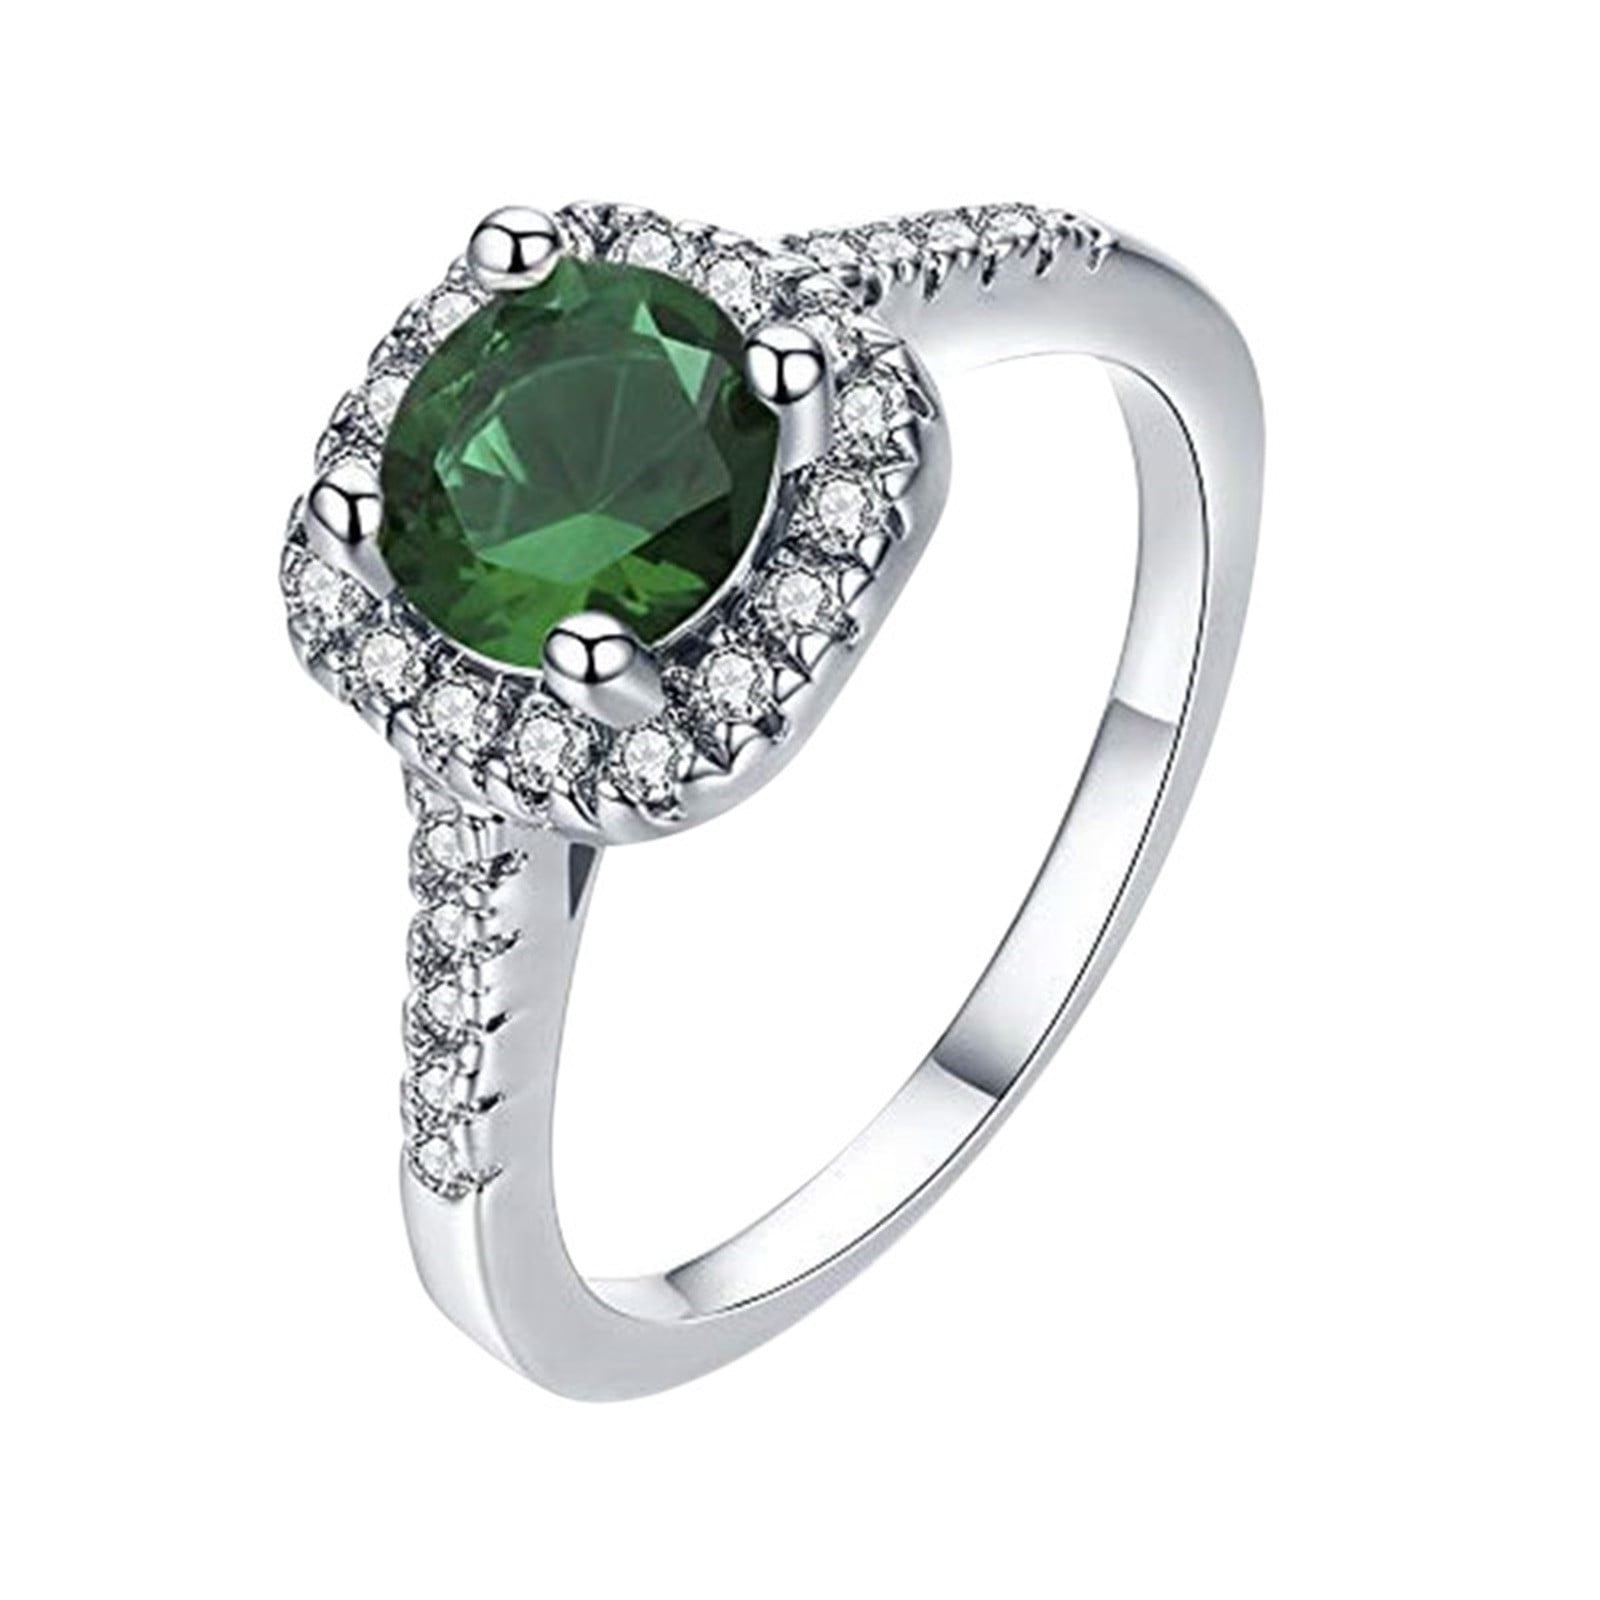 Wedding Engagement Jewelry Gift White Stone Ring Handmade Luxury Cut 